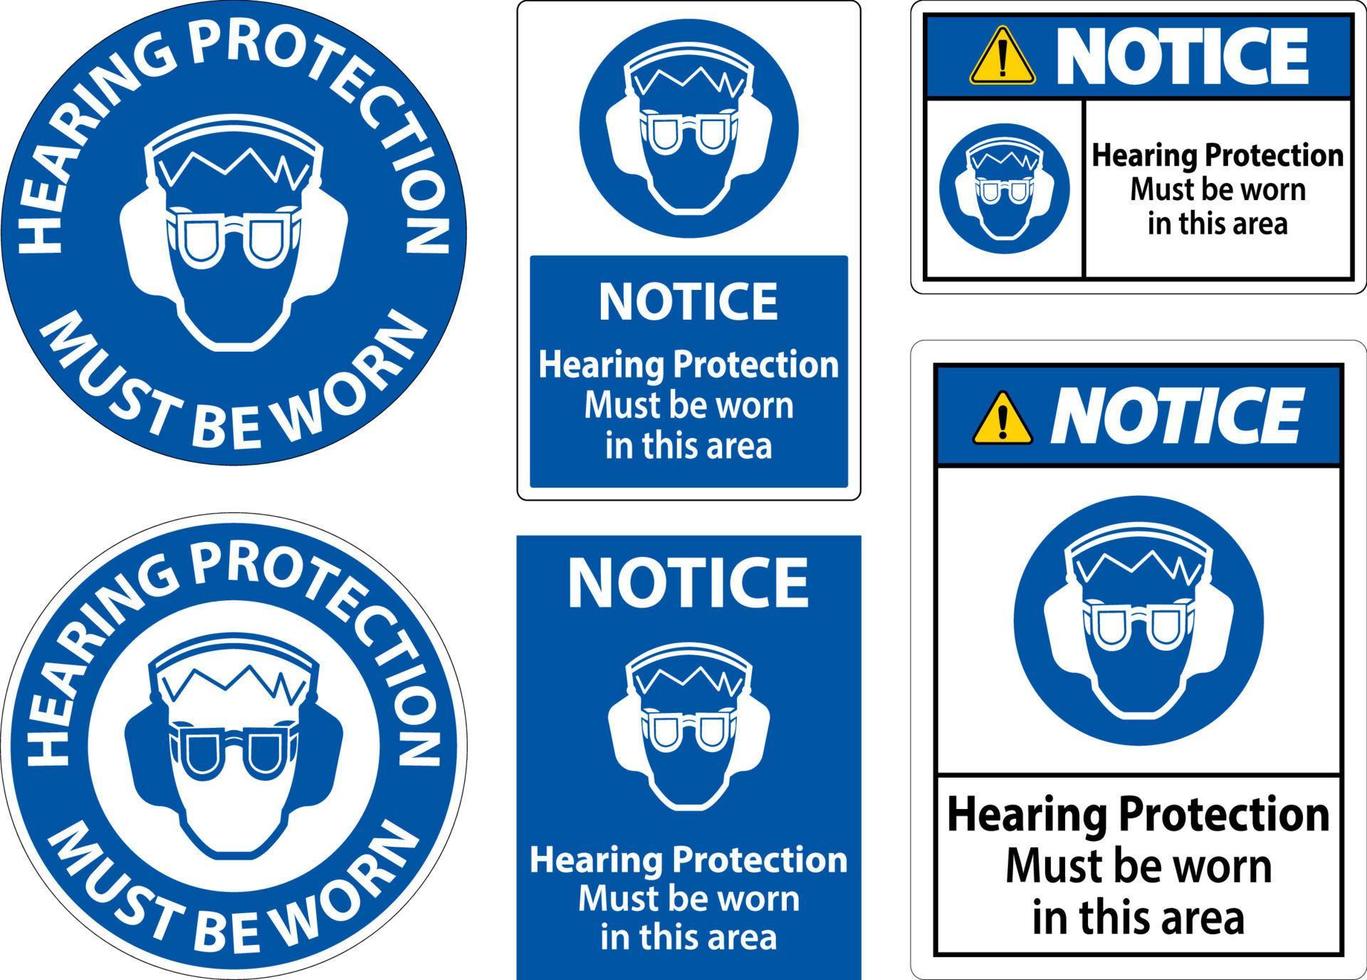 Aviso de protección auditiva debe llevarse signo sobre fondo blanco. vector